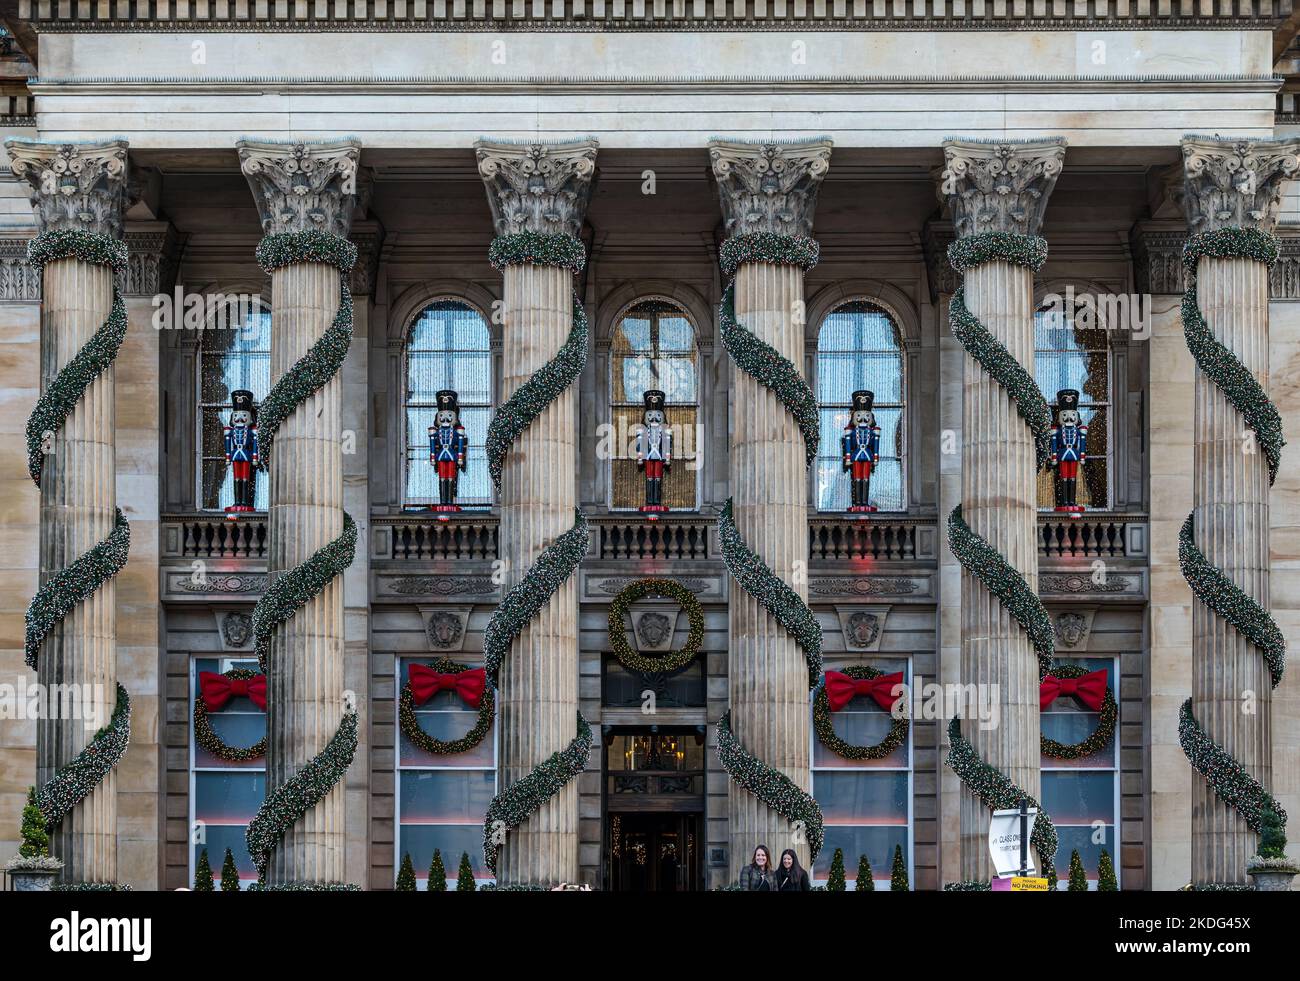 George Street, Édimbourg, Écosse, Royaume-Uni, 6th novembre 2022. Lumières de Noël en forme de dôme : les décorations de Noël traditionnelles du dôme, qui sont des guirlandes et des soldats de casse-noisettes, sont déjà en place à l’avant du bâtiment néoclassique. Crédit : Sally Anderson/Alay Live News Banque D'Images